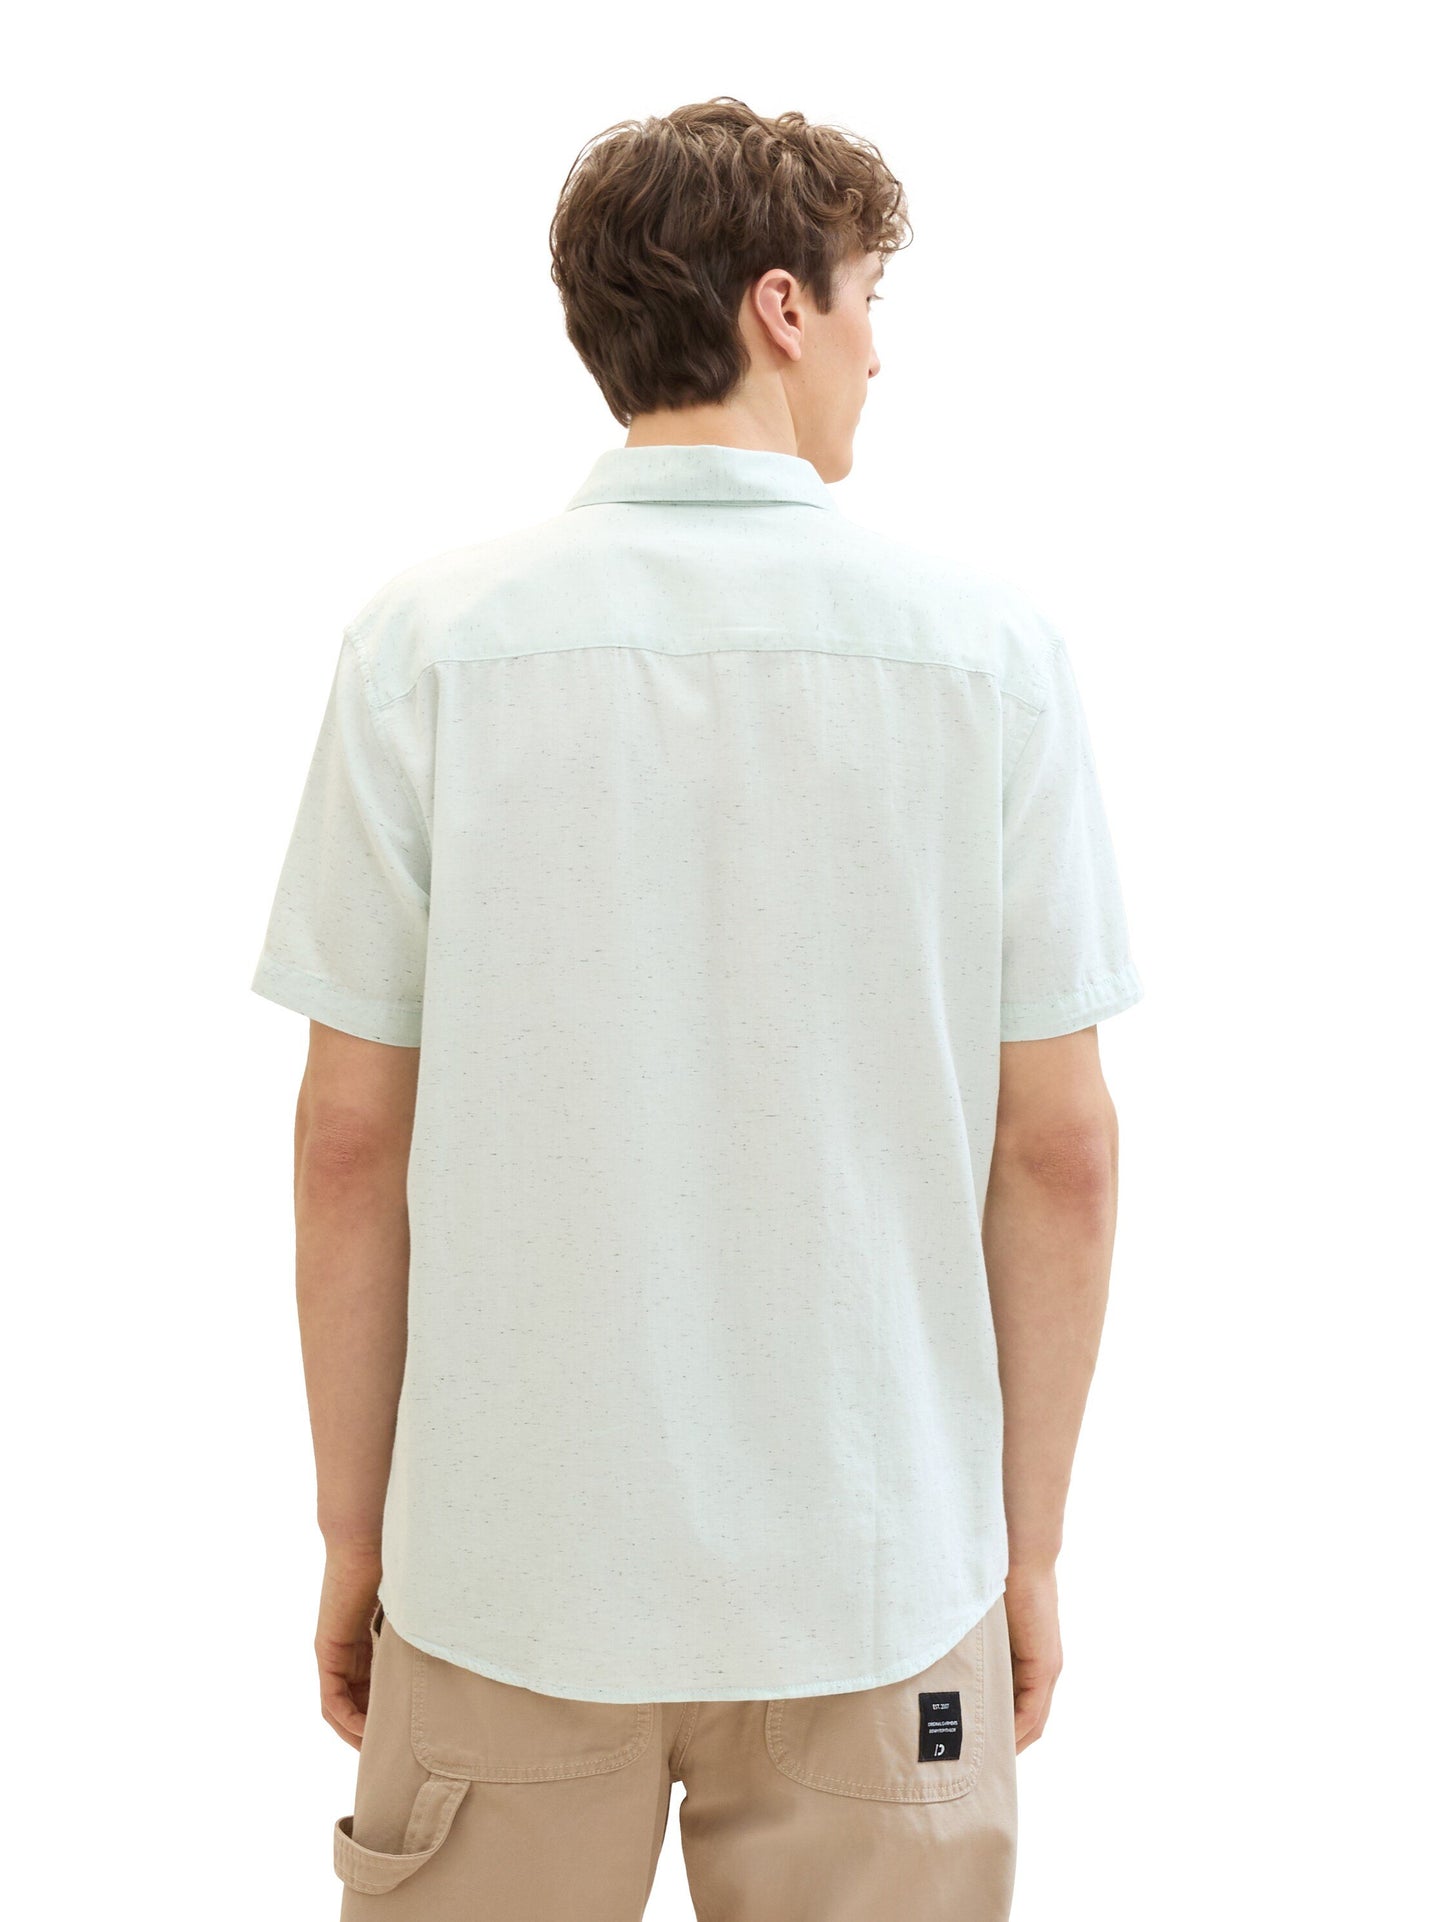 structured shirt (Sea Foam Herri)